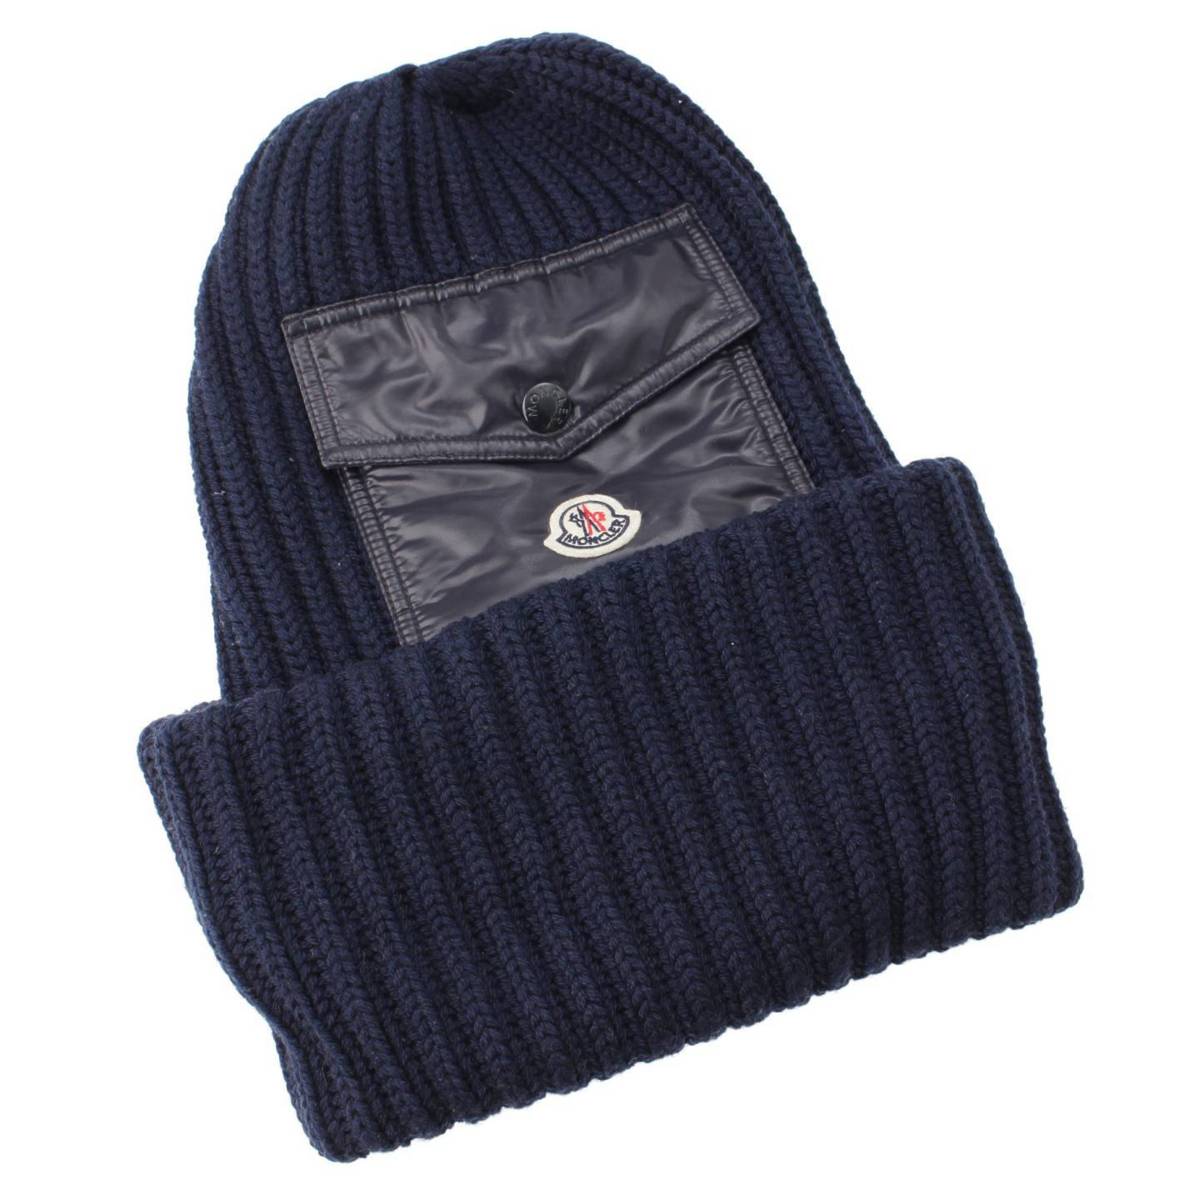 モンクレール(Moncler) ロゴ ポケット付き ニット帽 ニットキャップ 帽子 ネイビー